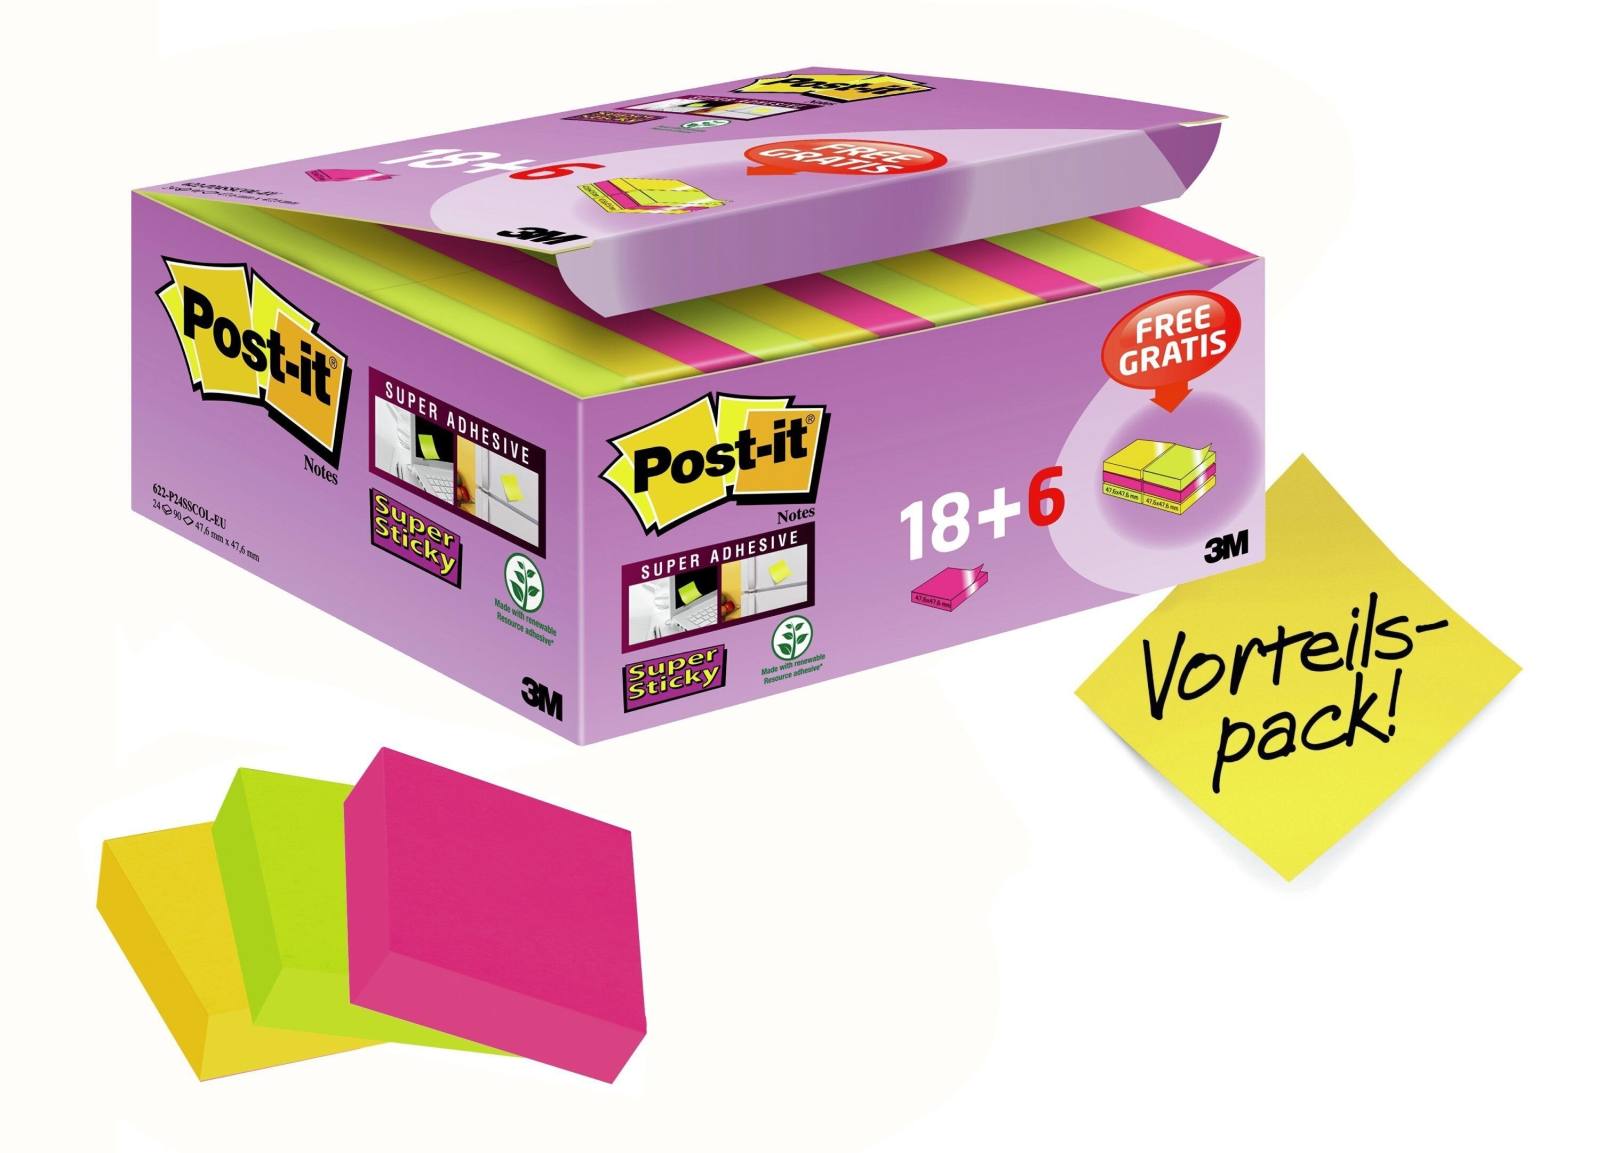 3M Post-it Super Sticky Notes Promotion 622P24SC, 24 blocs de 90 feuilles dans une boîte à prix avantageux, ultra rose, -jaune, vert fluo, 48 mm x 48 mm, non cellophané individuellement, certifié PEFC